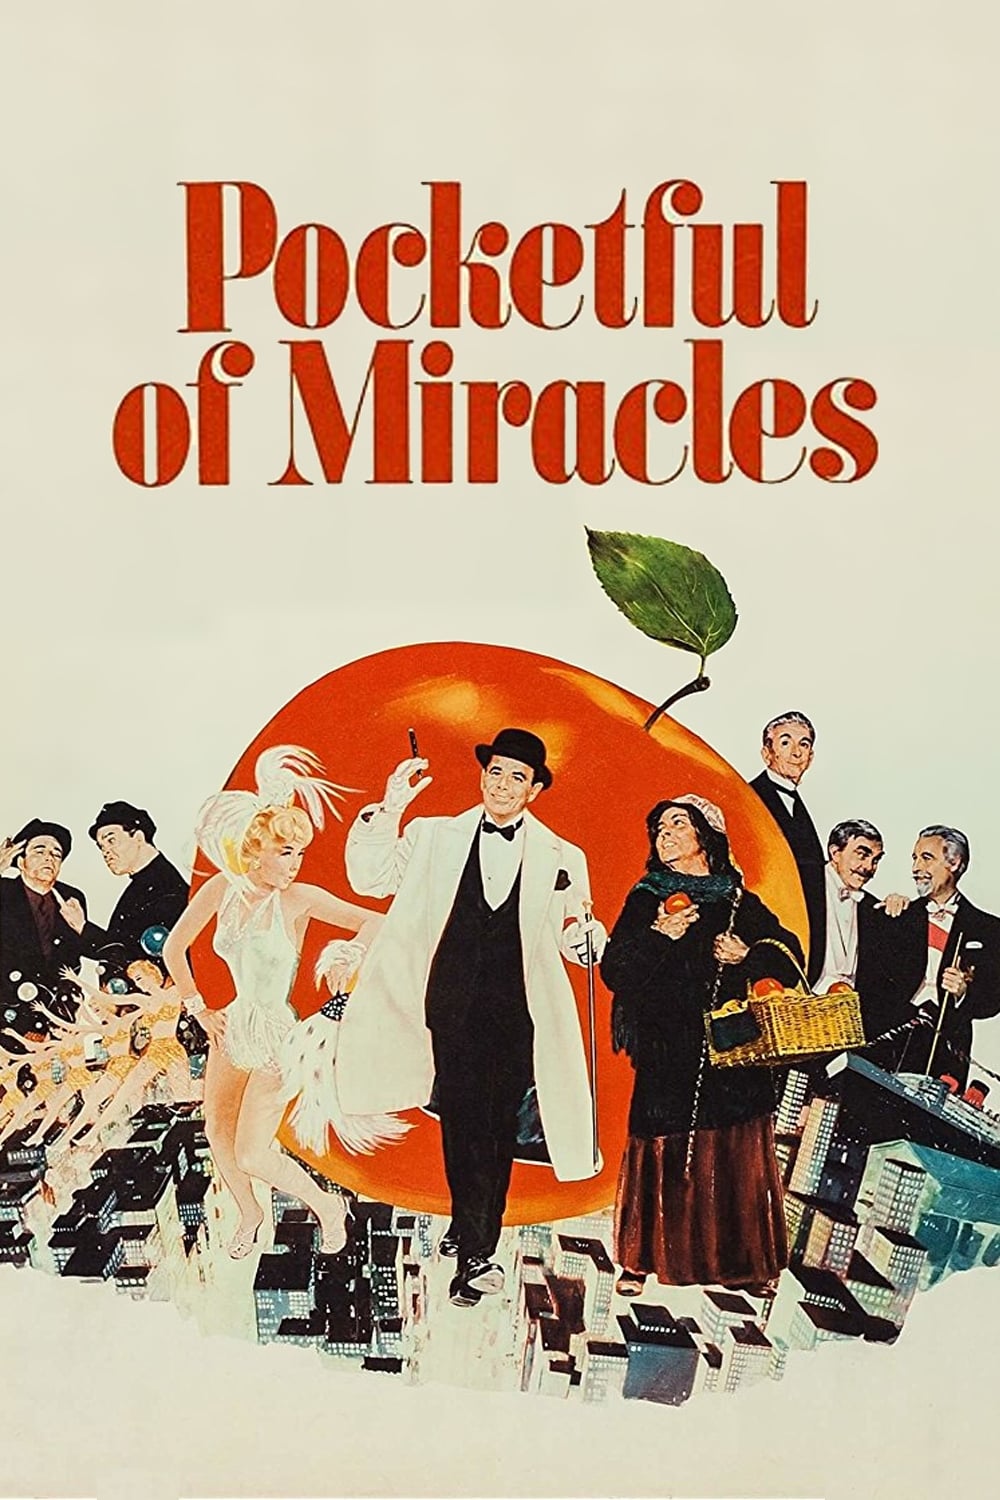 Pocketful of Miracles (1961)